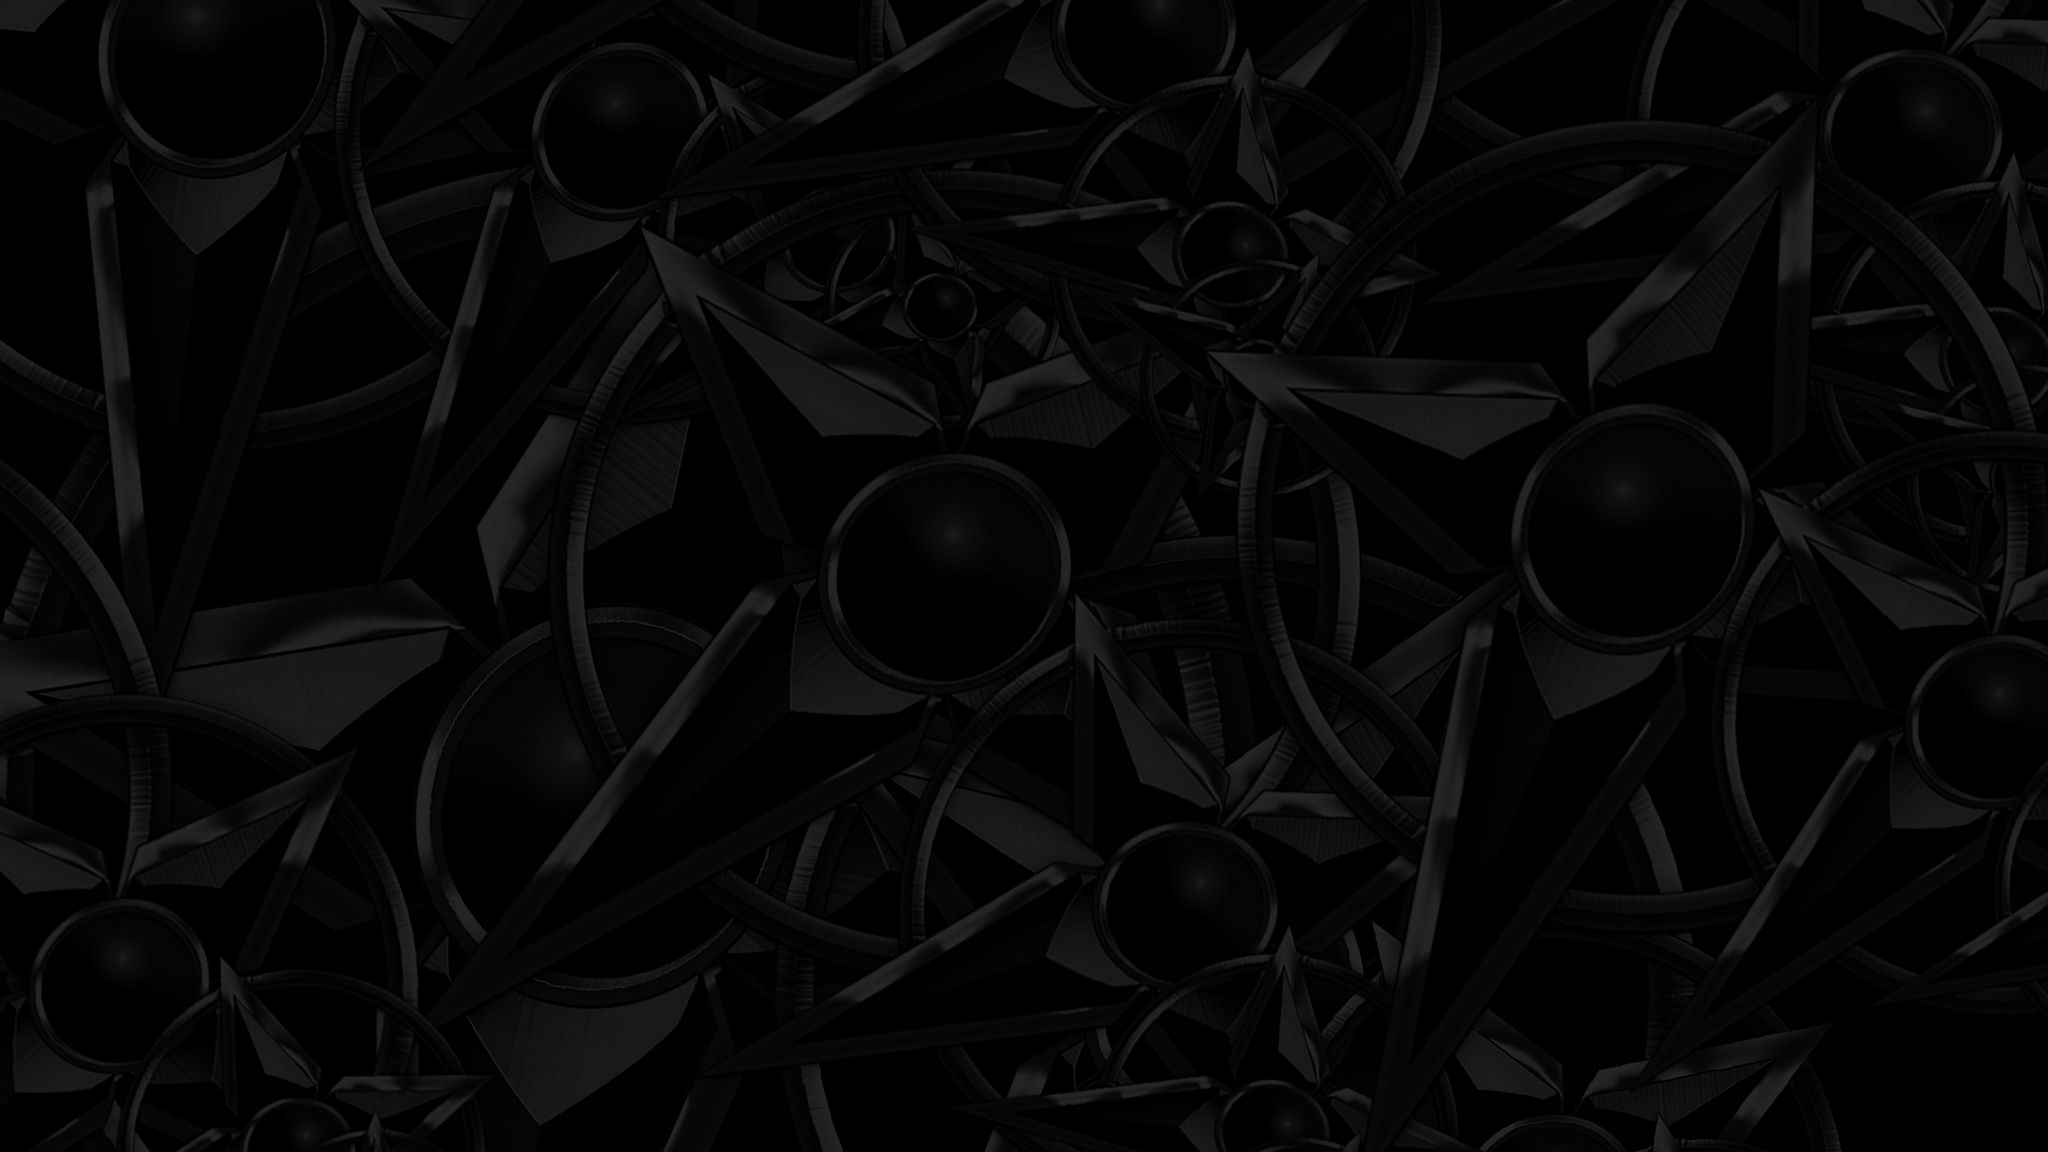 Bạn muốn có một bức hình nền đen 2048x1152 tuyệt đẹp, với kết cấu độc đáo và khác biệt? Hãy tải hình nền texture đen, tối, với cấu trúc thú vị này của chúng tôi! Với độ phân giải cao và màu sắc tuyệt vời, đây là lựa chọn tuyệt vời để thay đổi diện mạo của desktop của bạn.